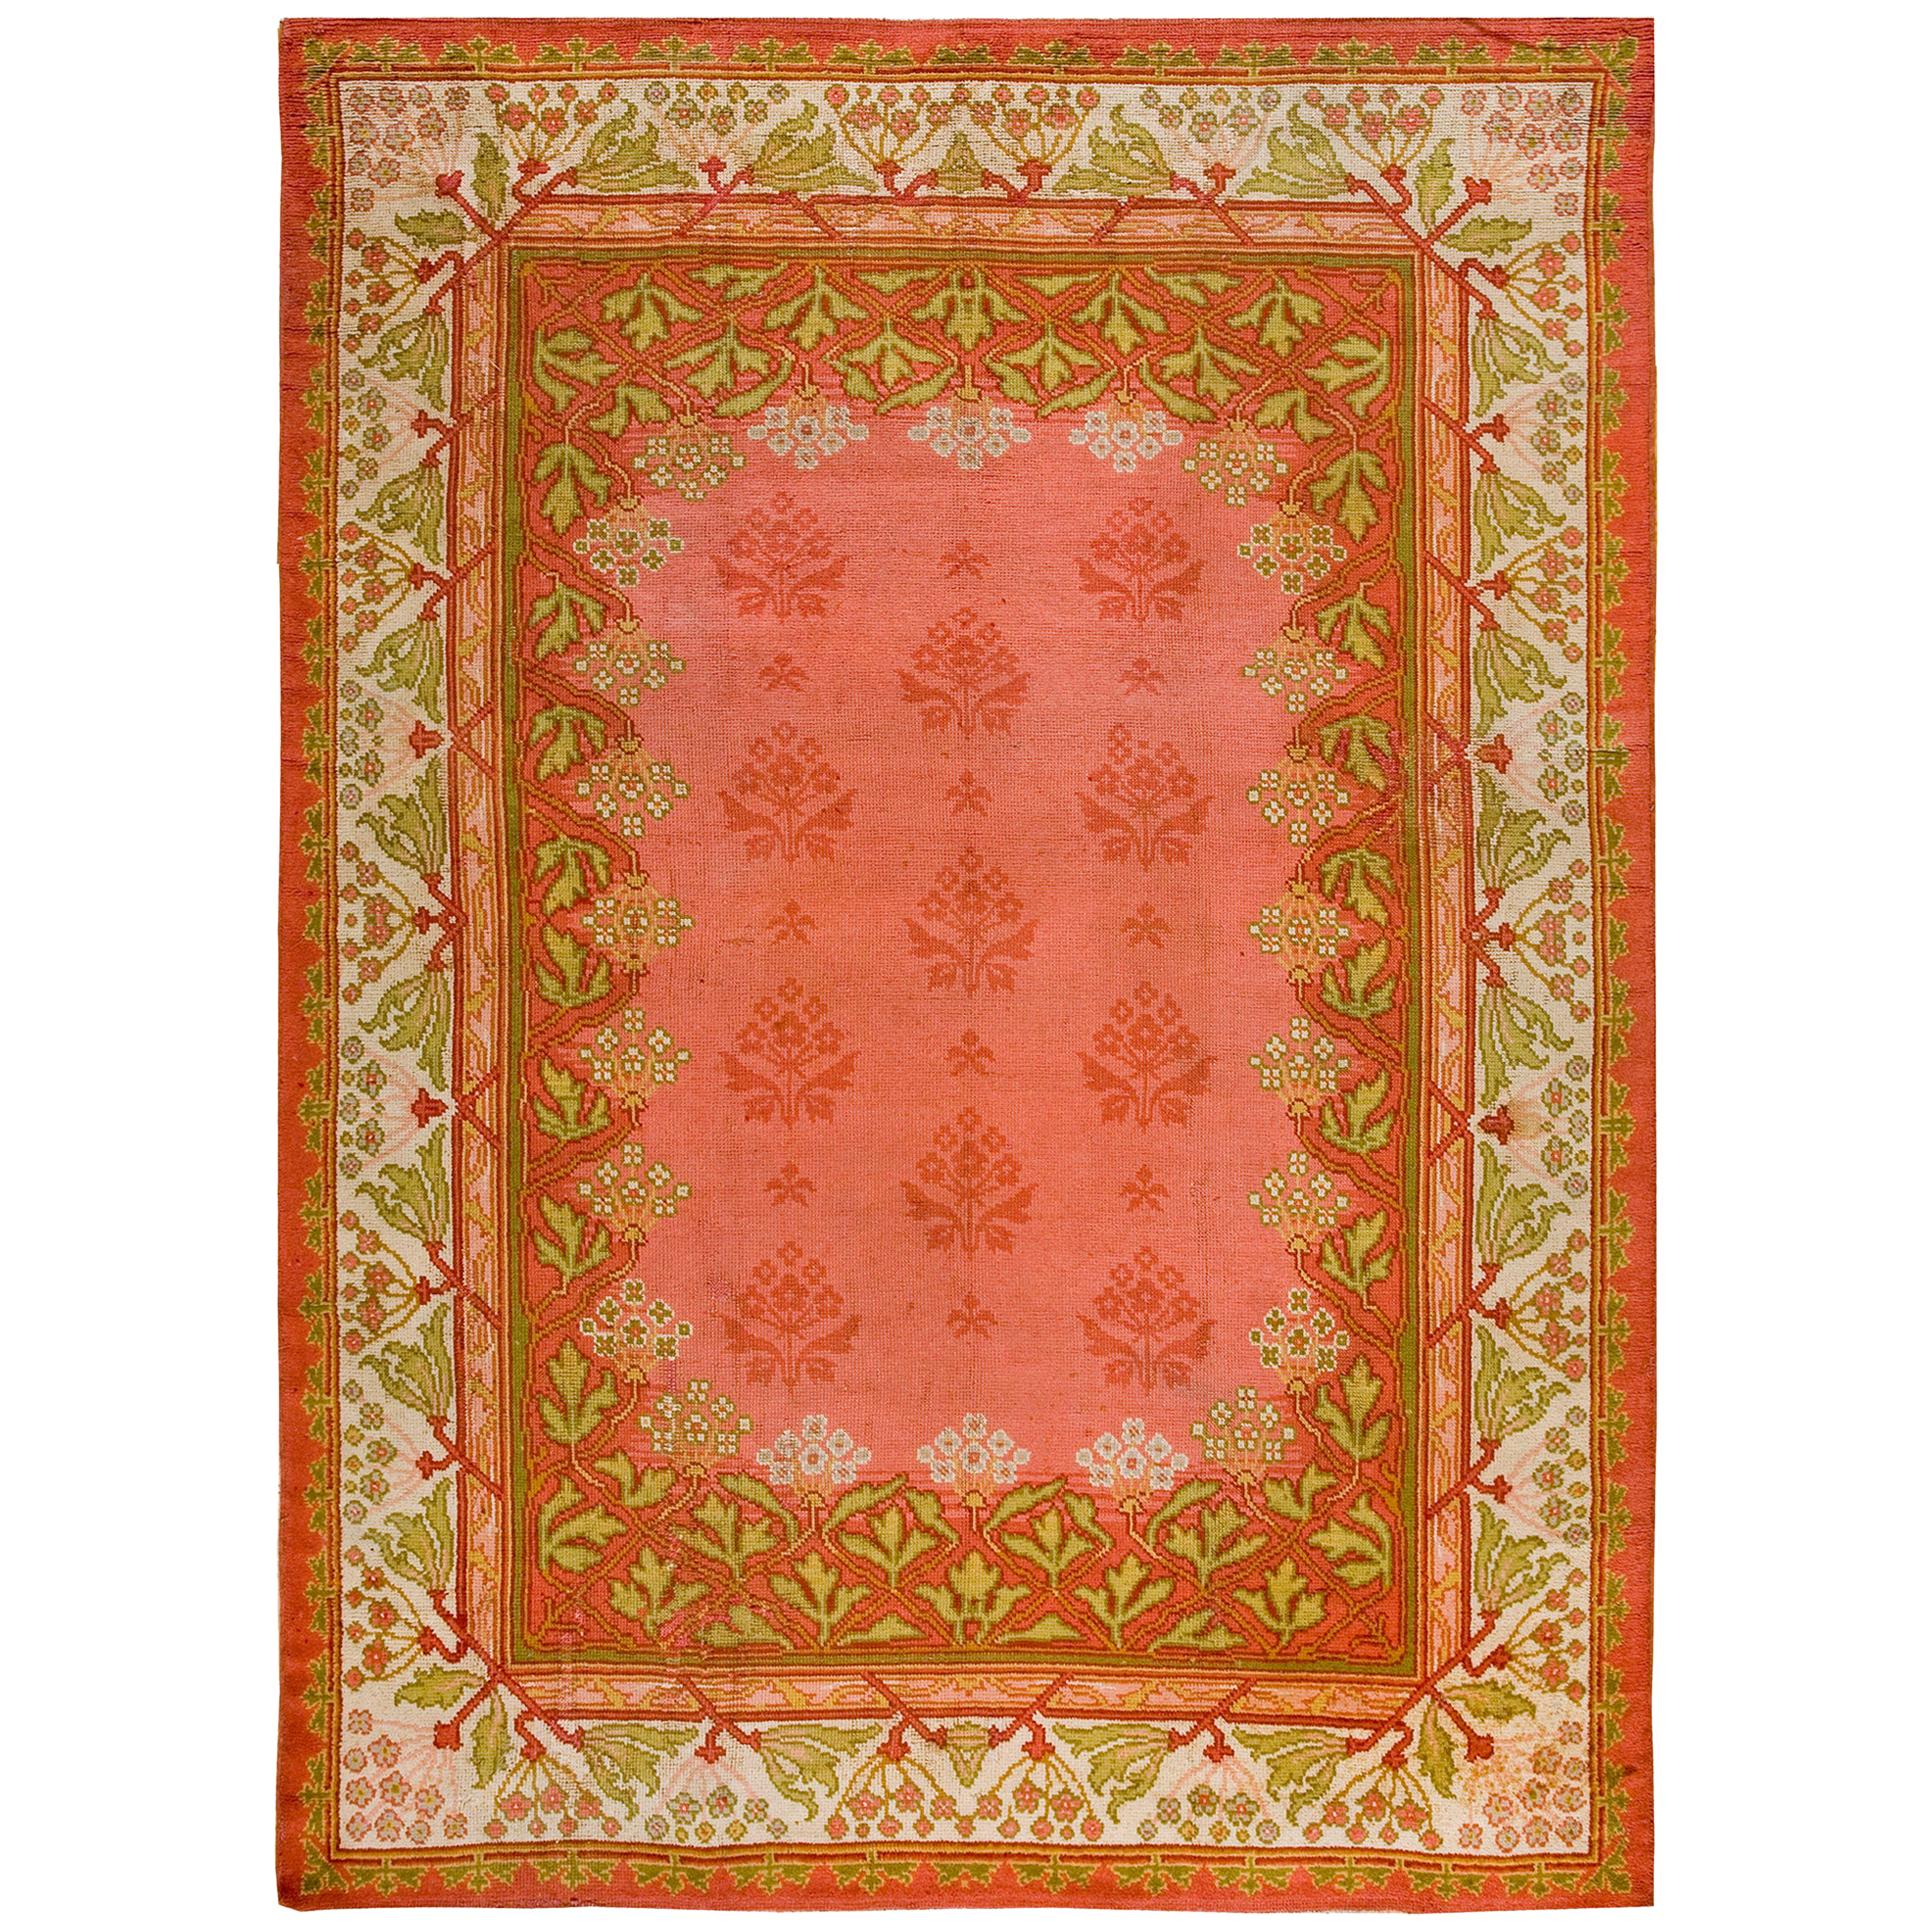 Early 20th Century Donegal Art Nouveau Carpet ( 9'1" x 12'6" - 277 x 382 )